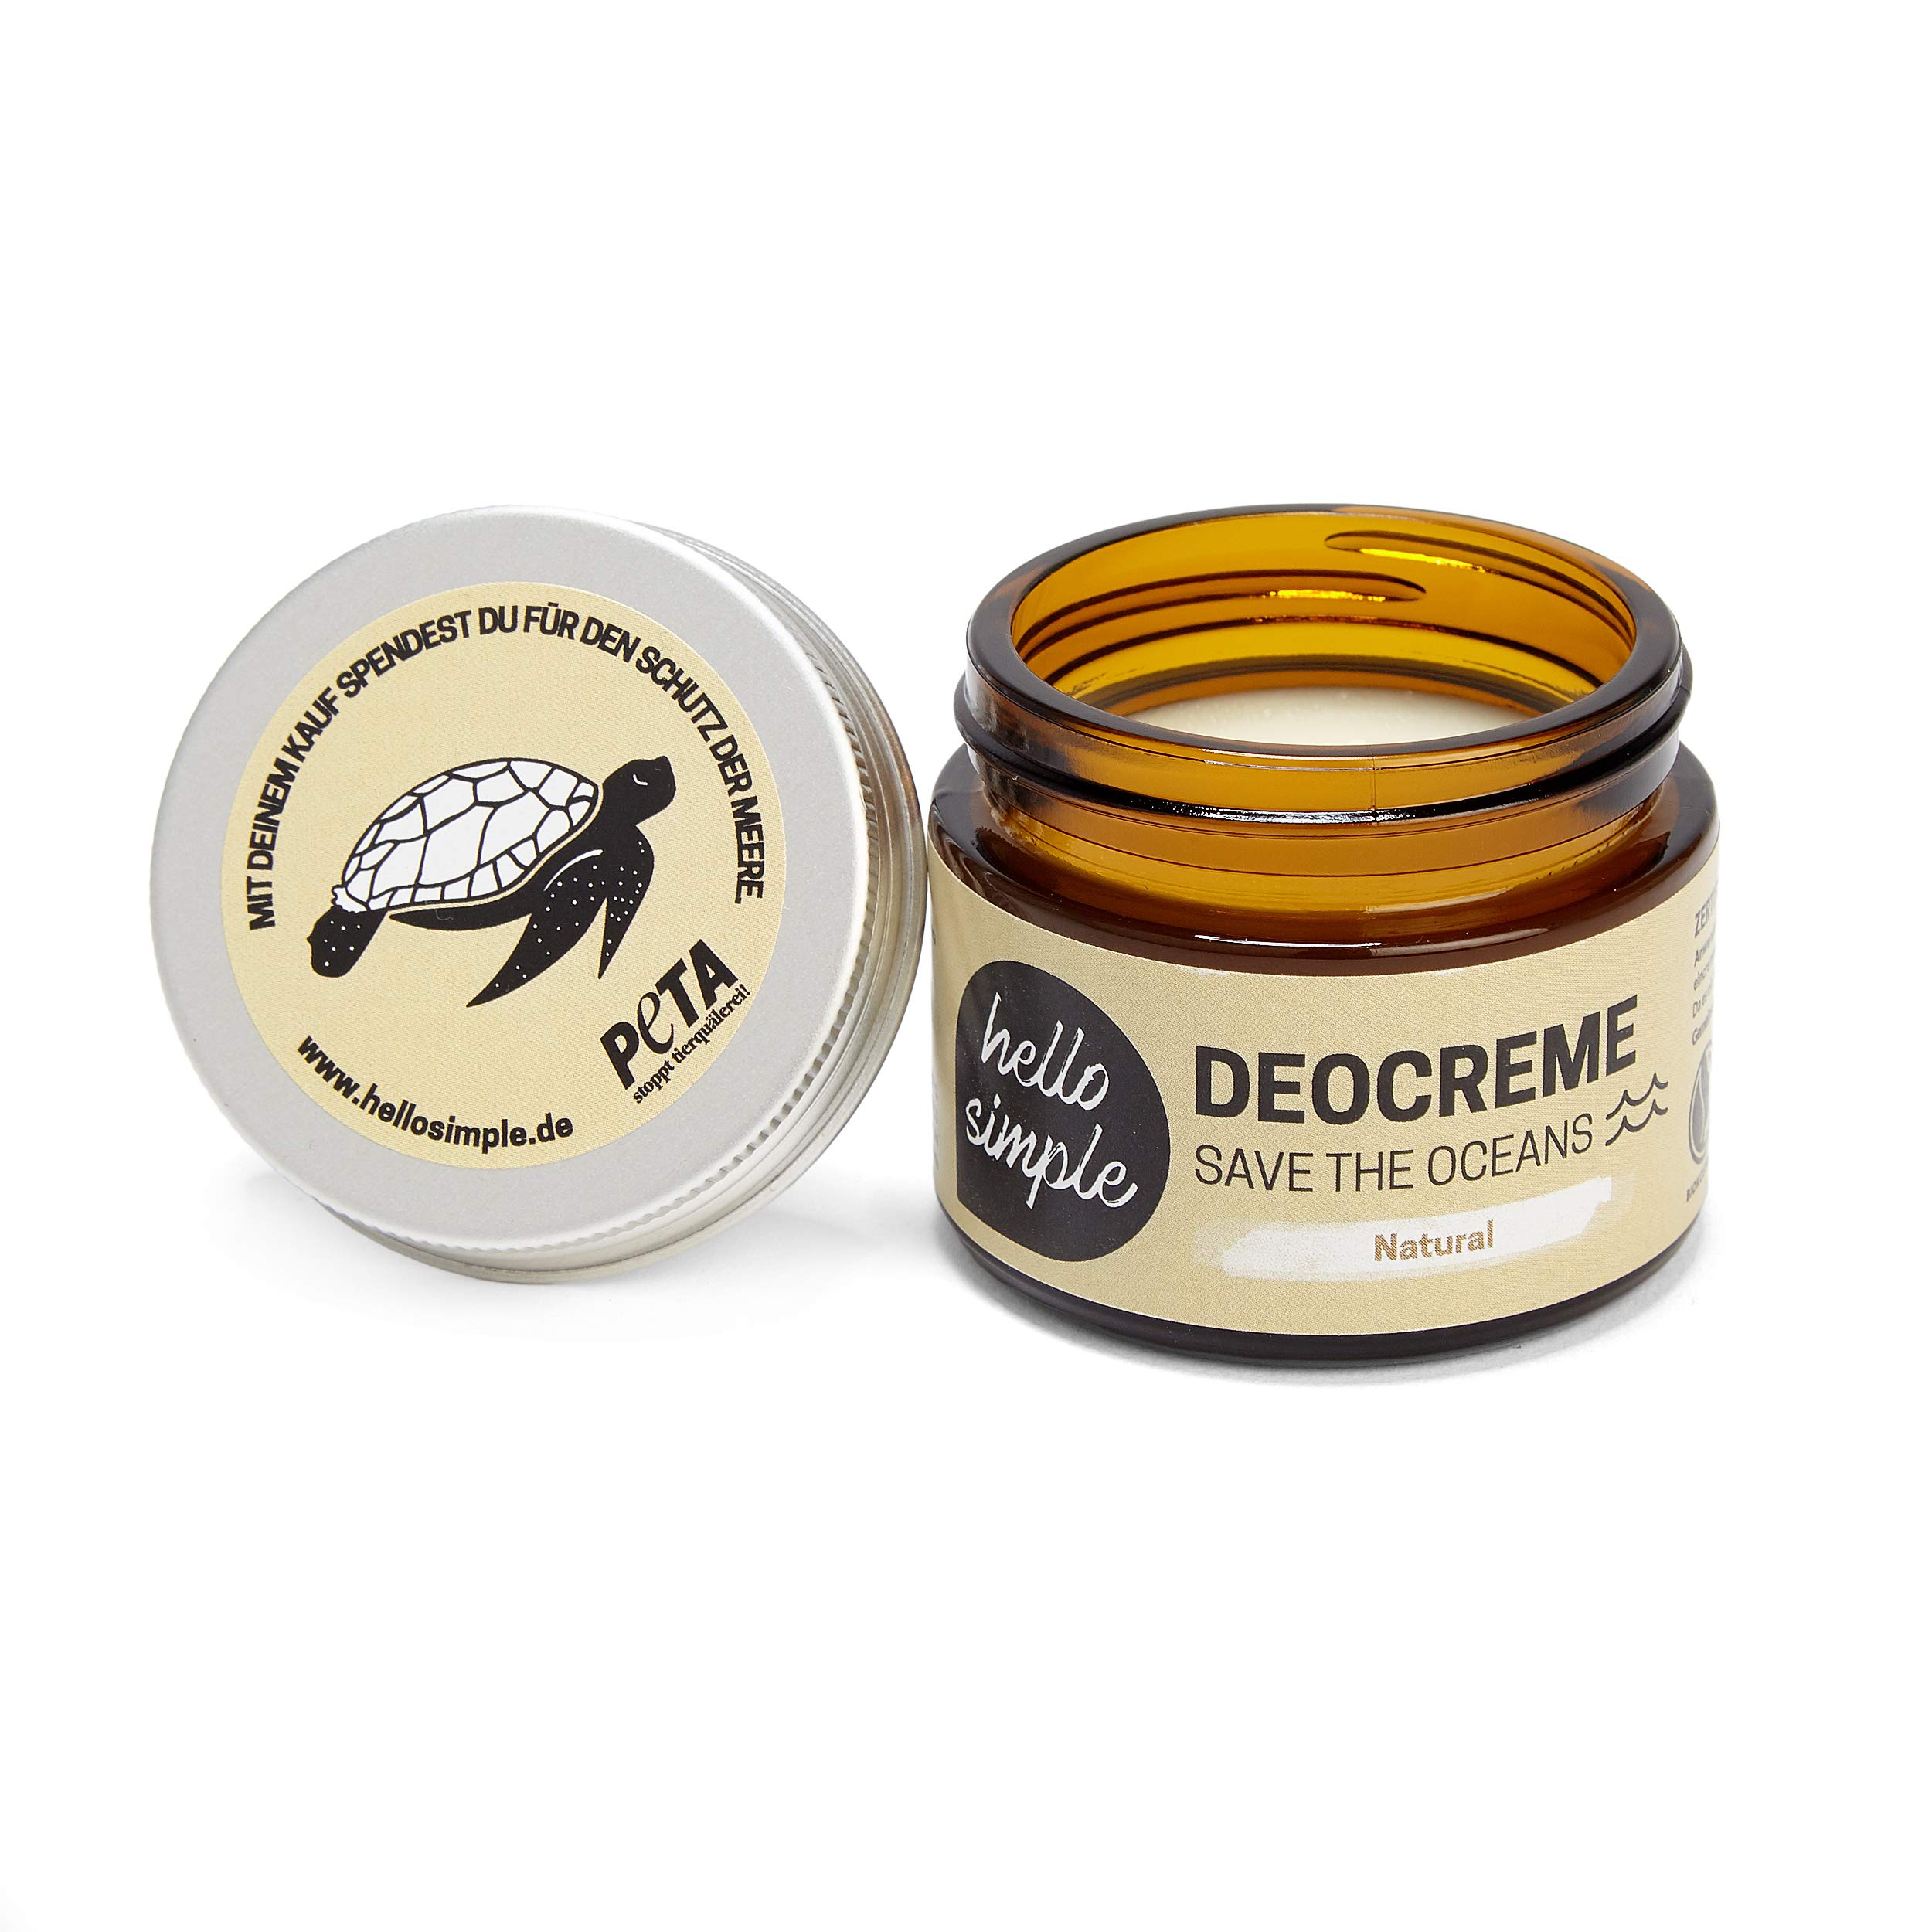 hello simple - Deocreme Deodorant Deo Creme (50 g) - SAVE THE OCEANS! - nachhaltige und zertifizierte Naturkosmetik - Deo Frauen Männer - ohne Aluminium, vegan, bio, plastikfrei(Natural)